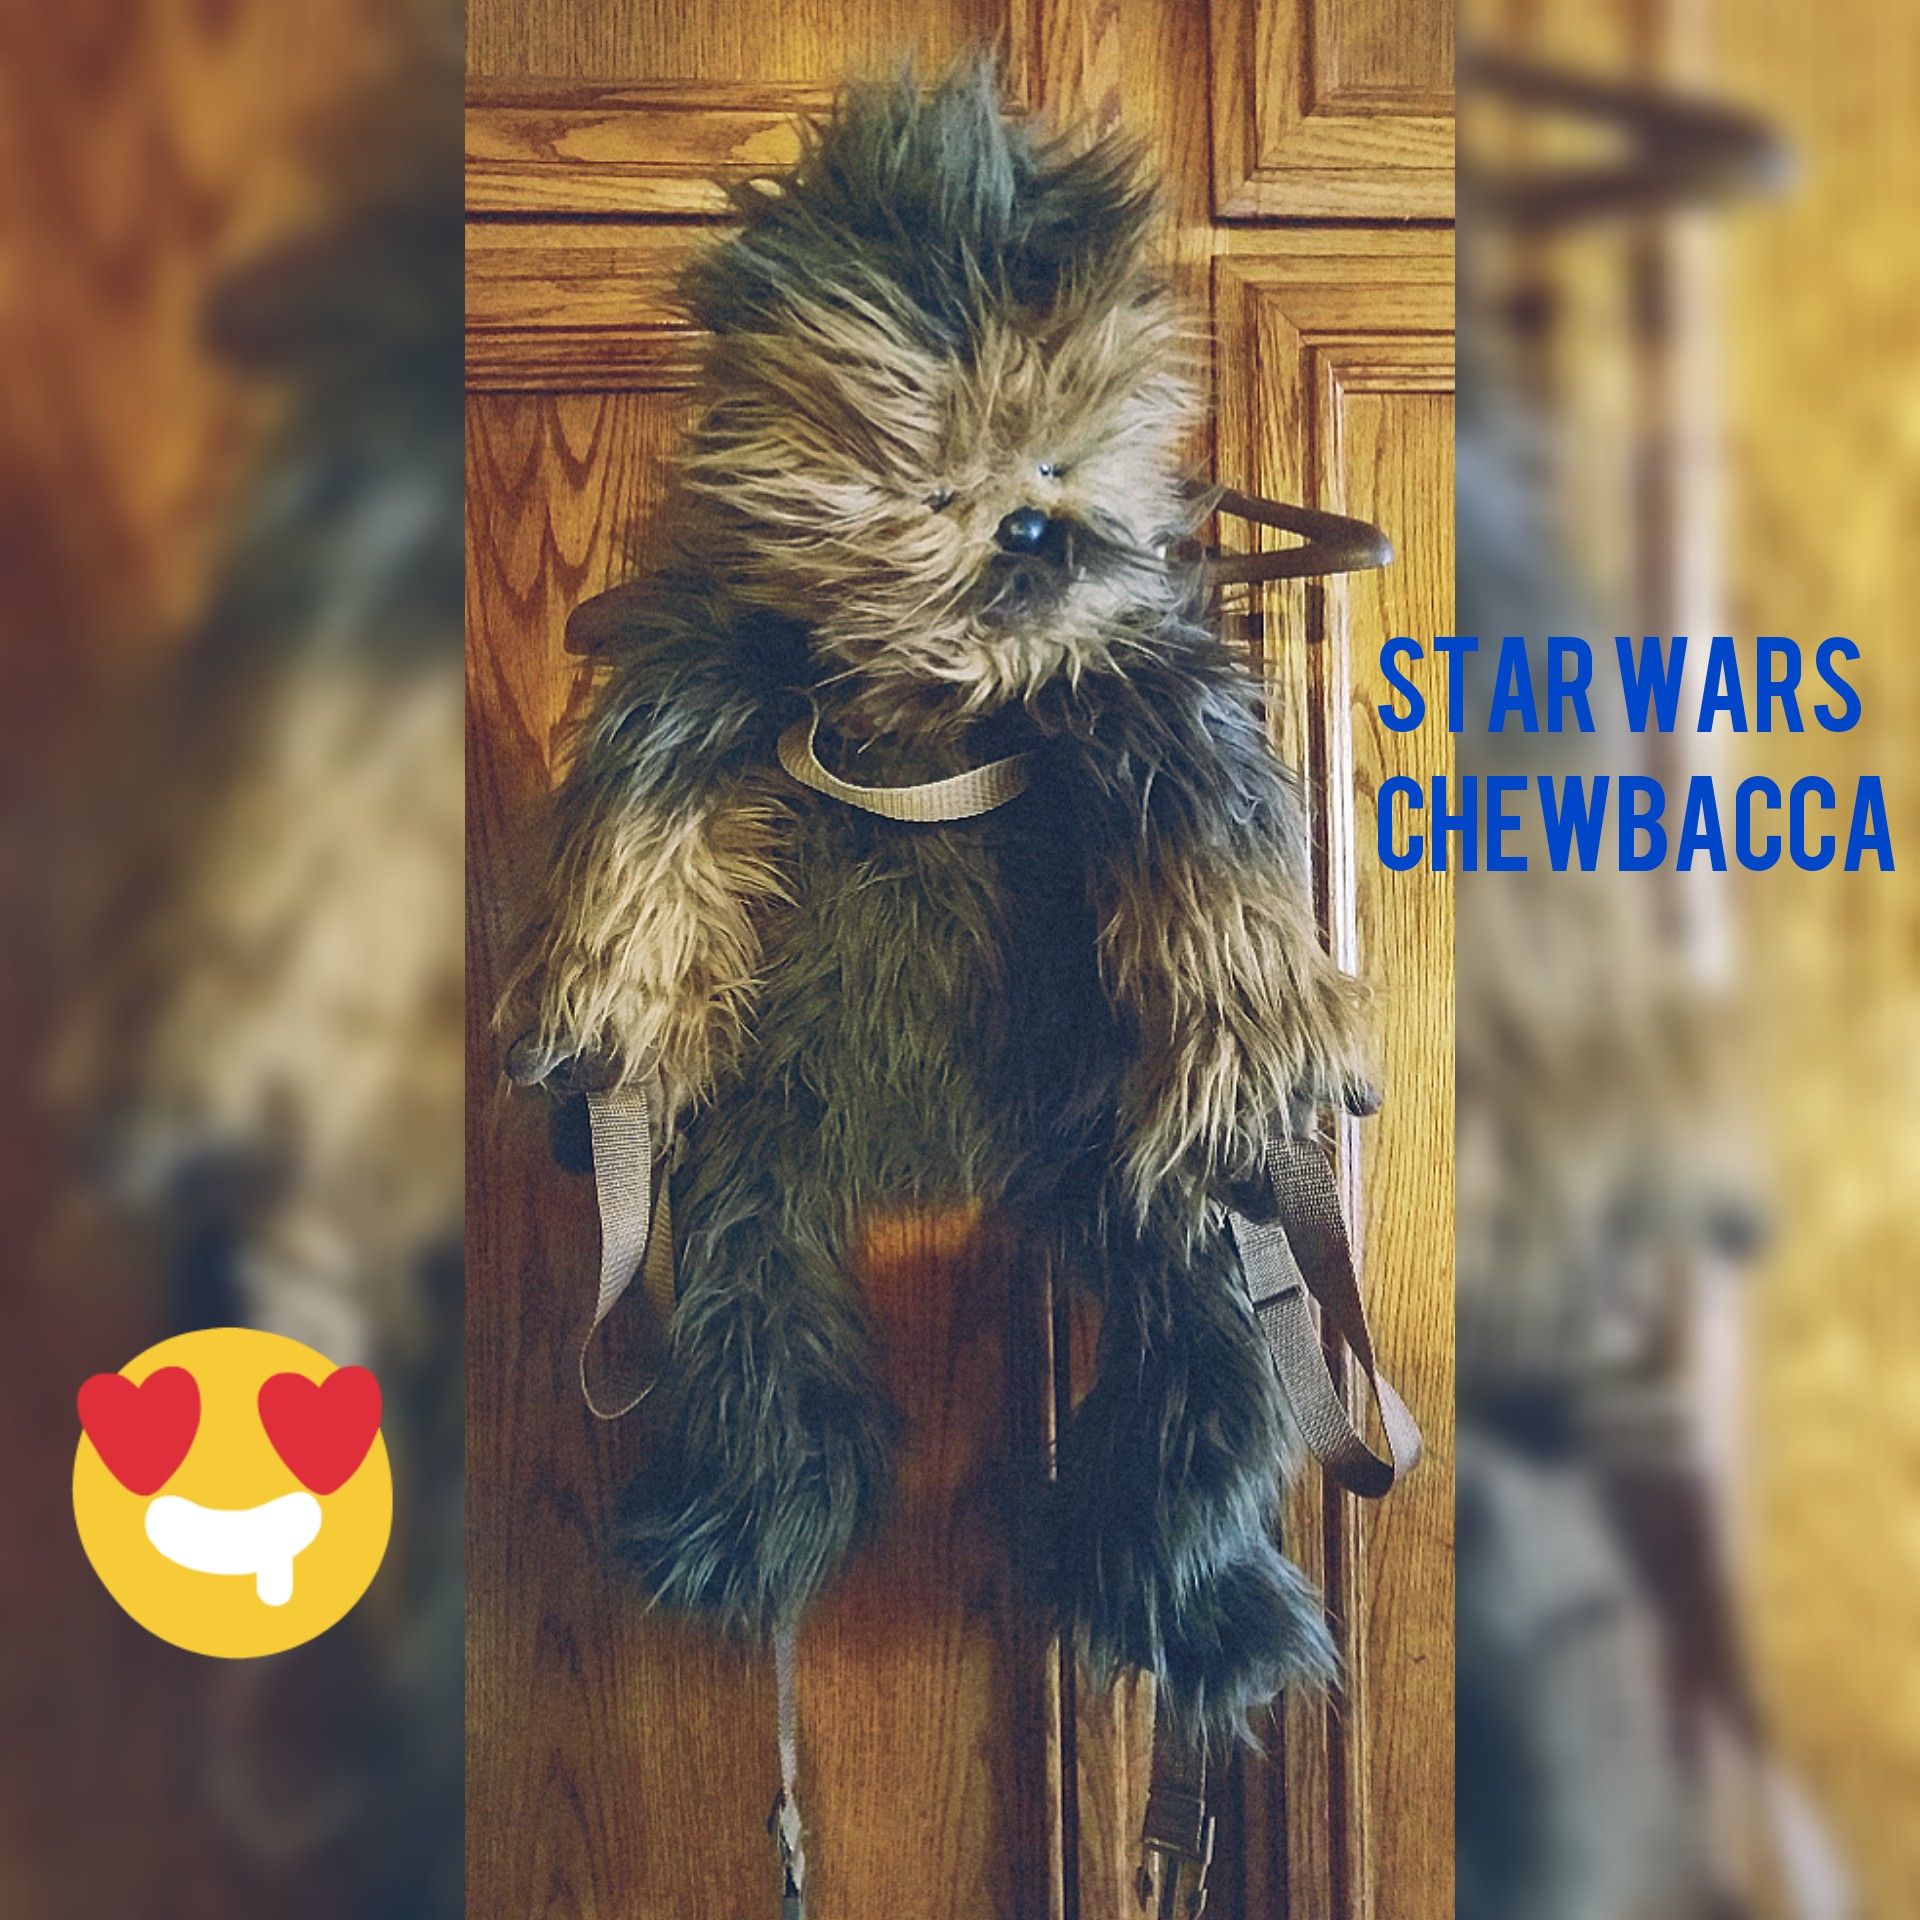 Star Wars Chewbacca backpack